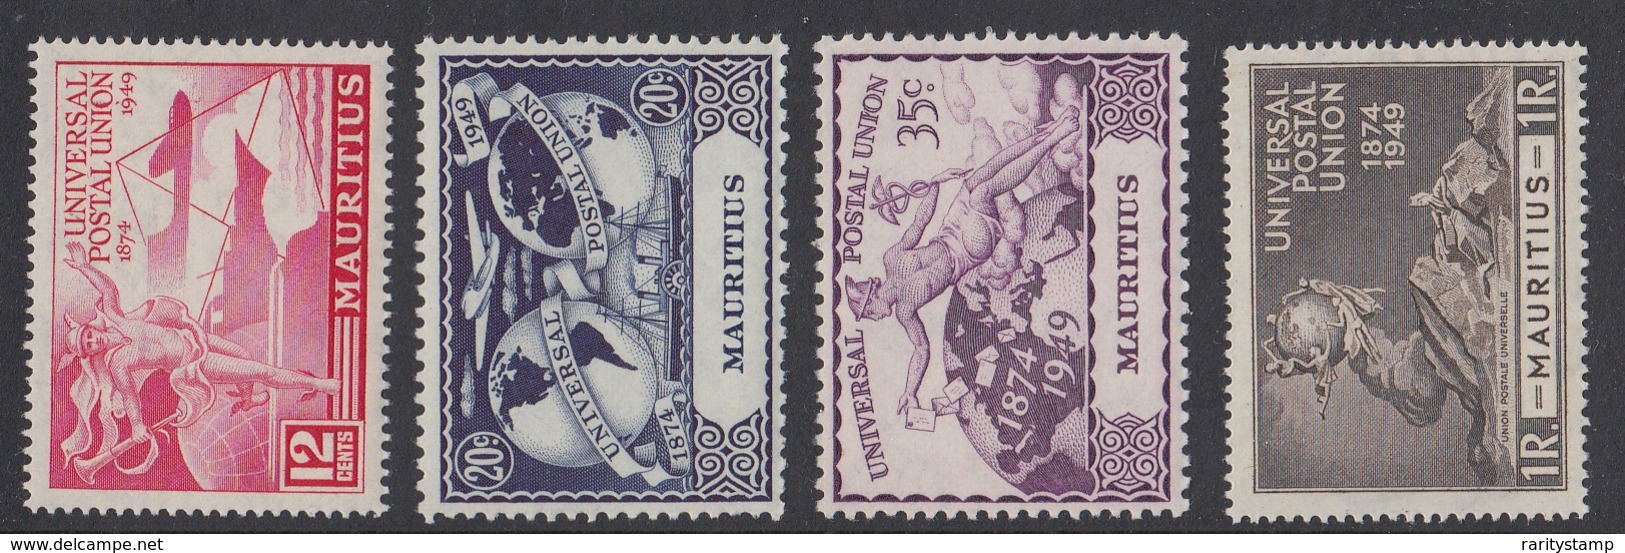 MAURITIUS 1949  UPU   SET SG 272/75 MNH - Mauritius (...-1967)